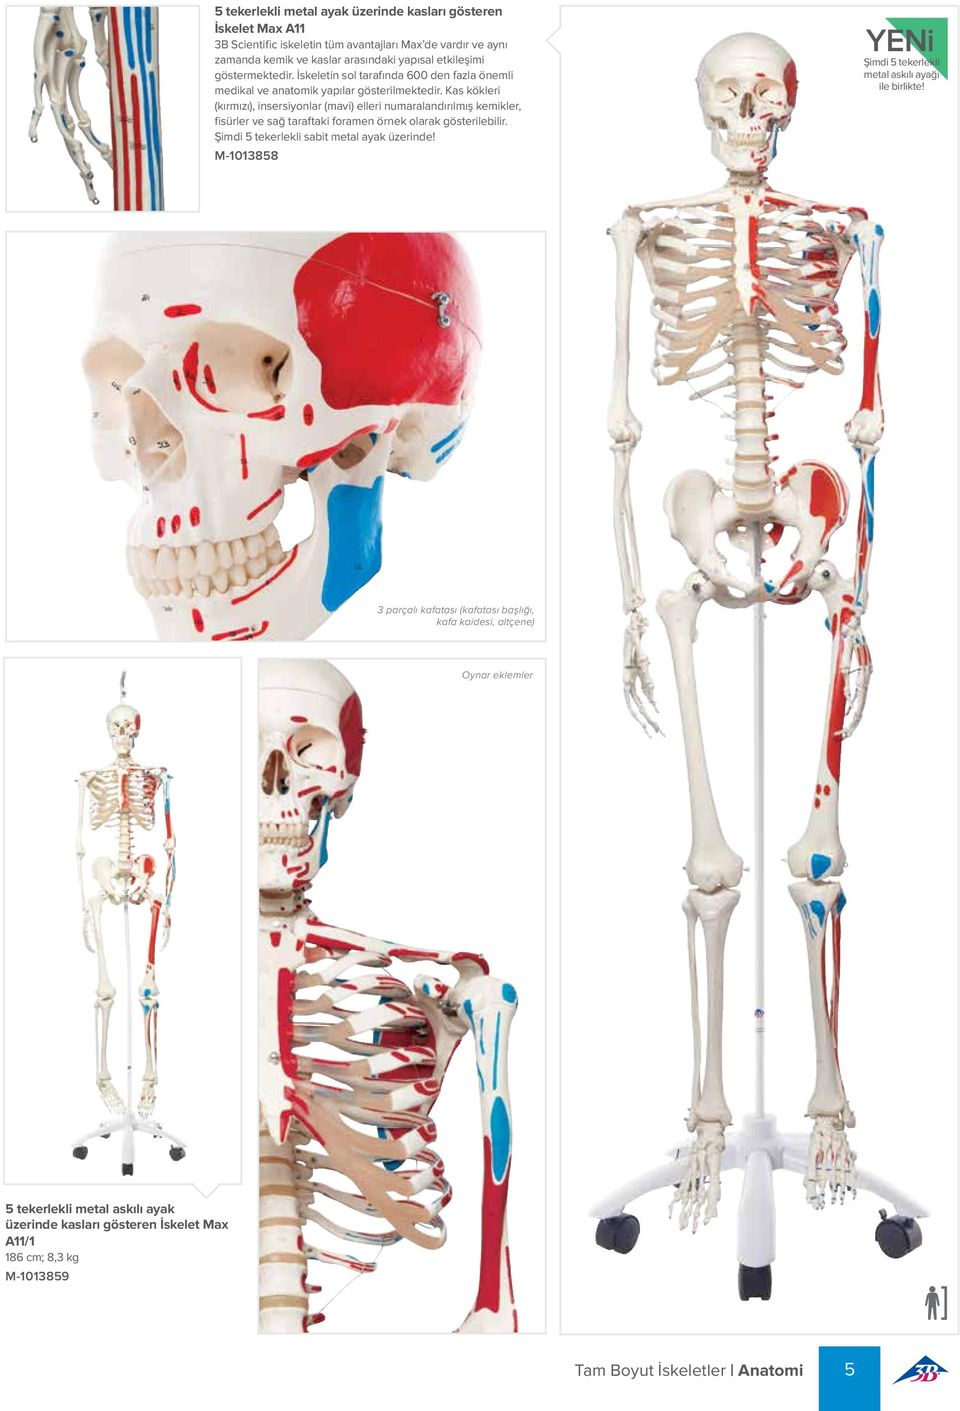 Kas kökleri (kırmızı), insersiyonlar (mavi) elleri numaralandırılmış kemikler, fisürler ve sağ taraftaki foramen örnek olarak gösterilebilir. Şimdi 5 tekerlekli sabit metal ayak üzerinde!